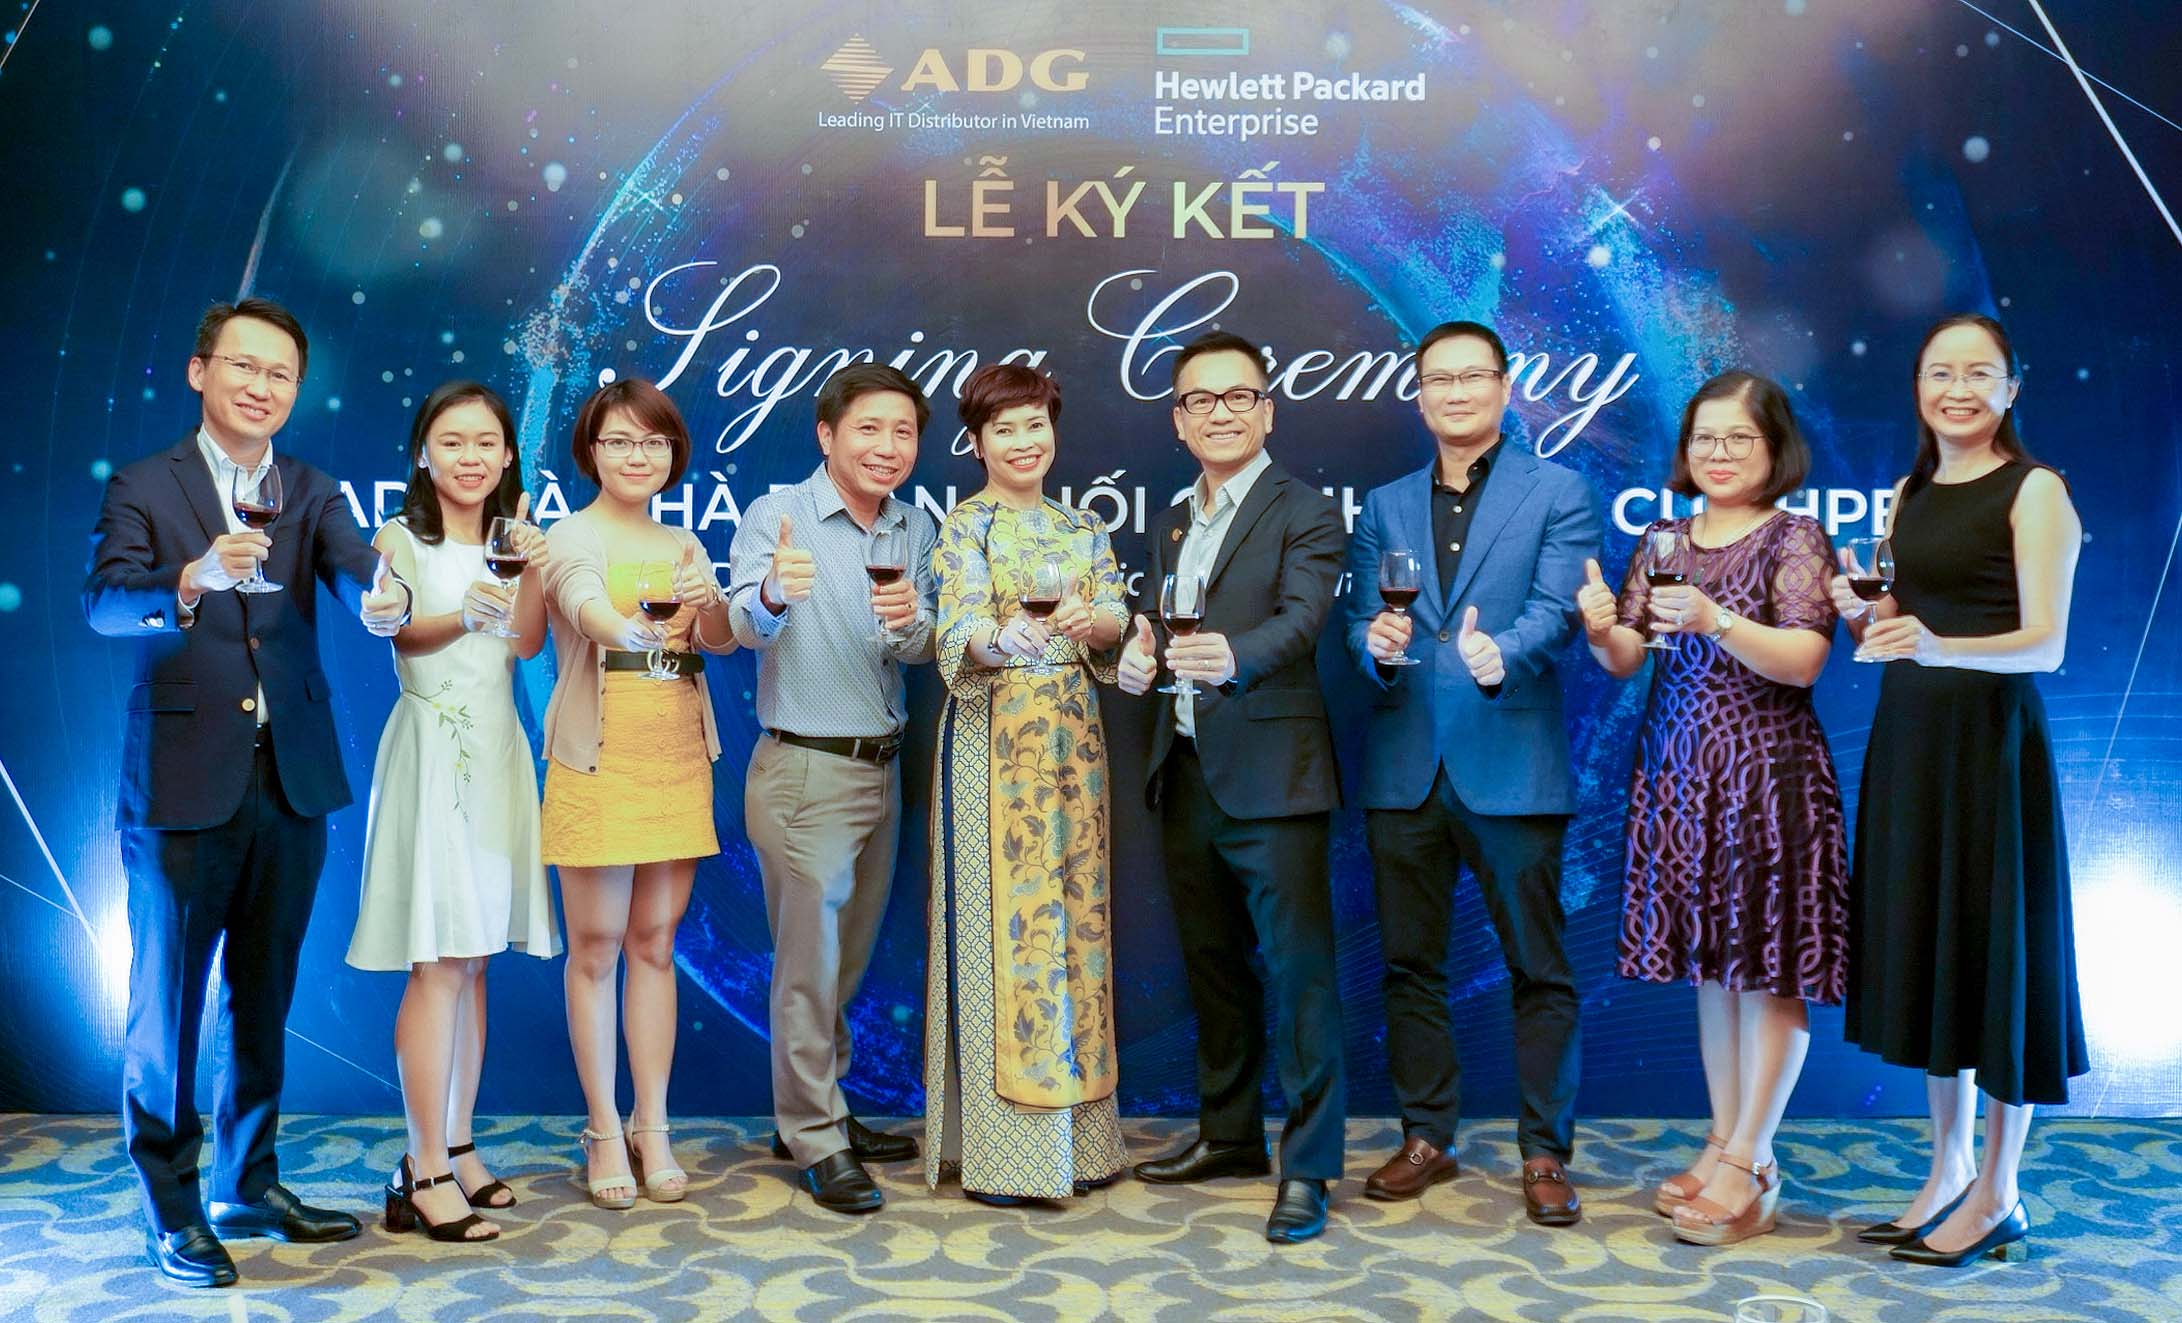 ADG Distribution trở thành Nhà phân phối mới nhất của HPE tại Việt Nam